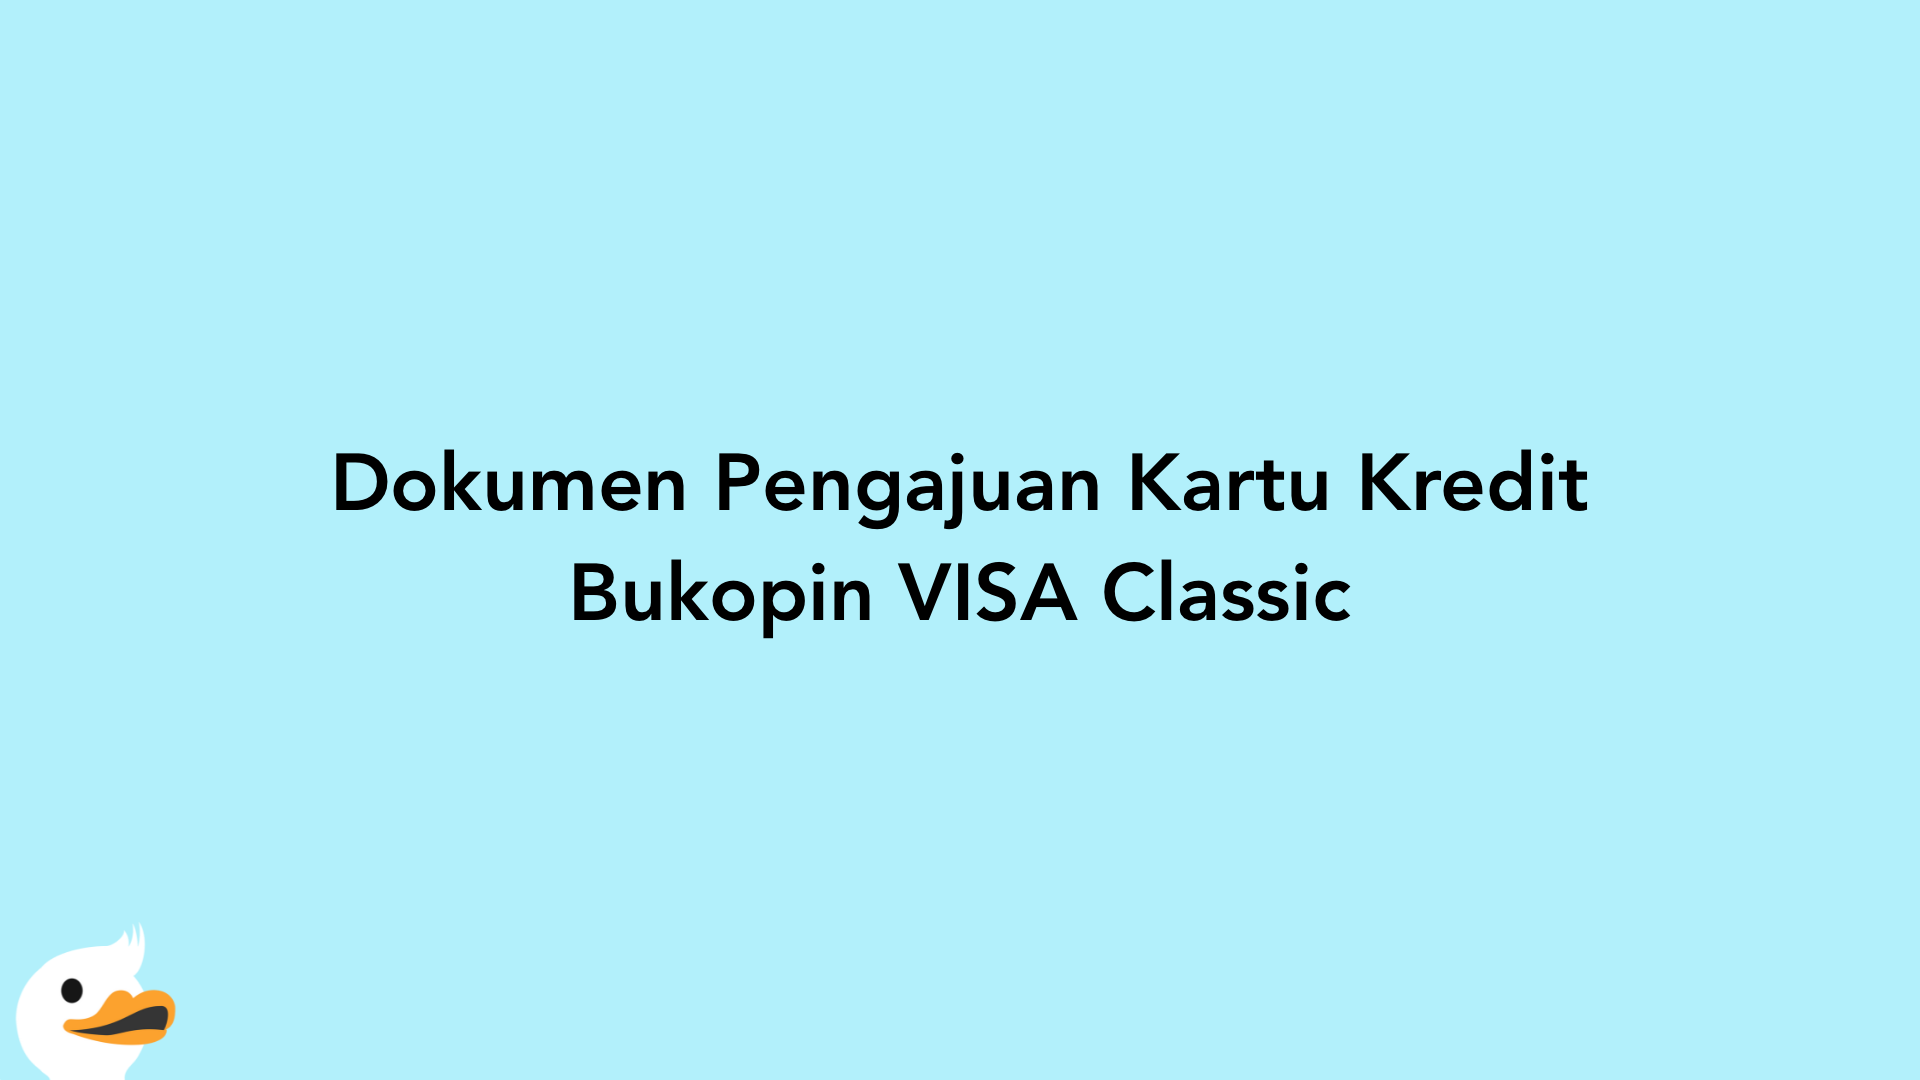 Dokumen Pengajuan Kartu Kredit Bukopin VISA Classic